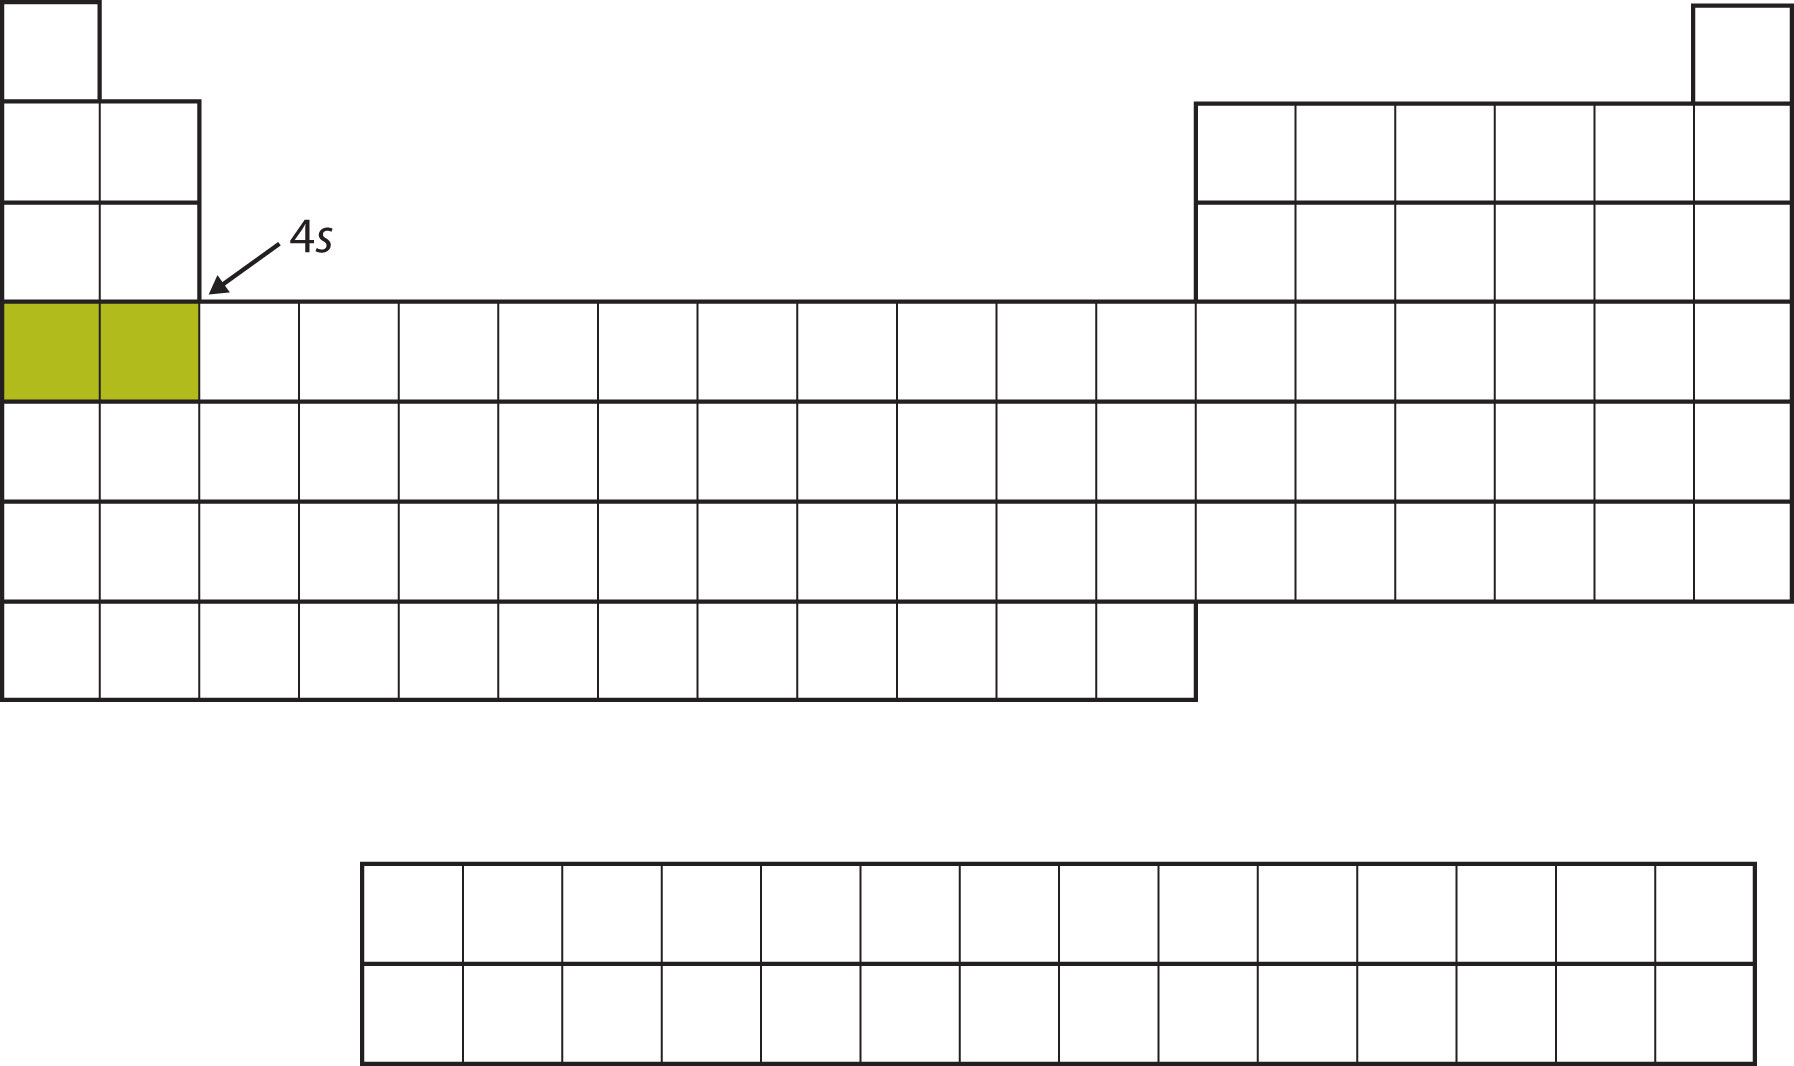 Tabla periódica vacía, con 2 cuadrados en la cuarta fila a la izquierda rellenados en un color verde mostaza.